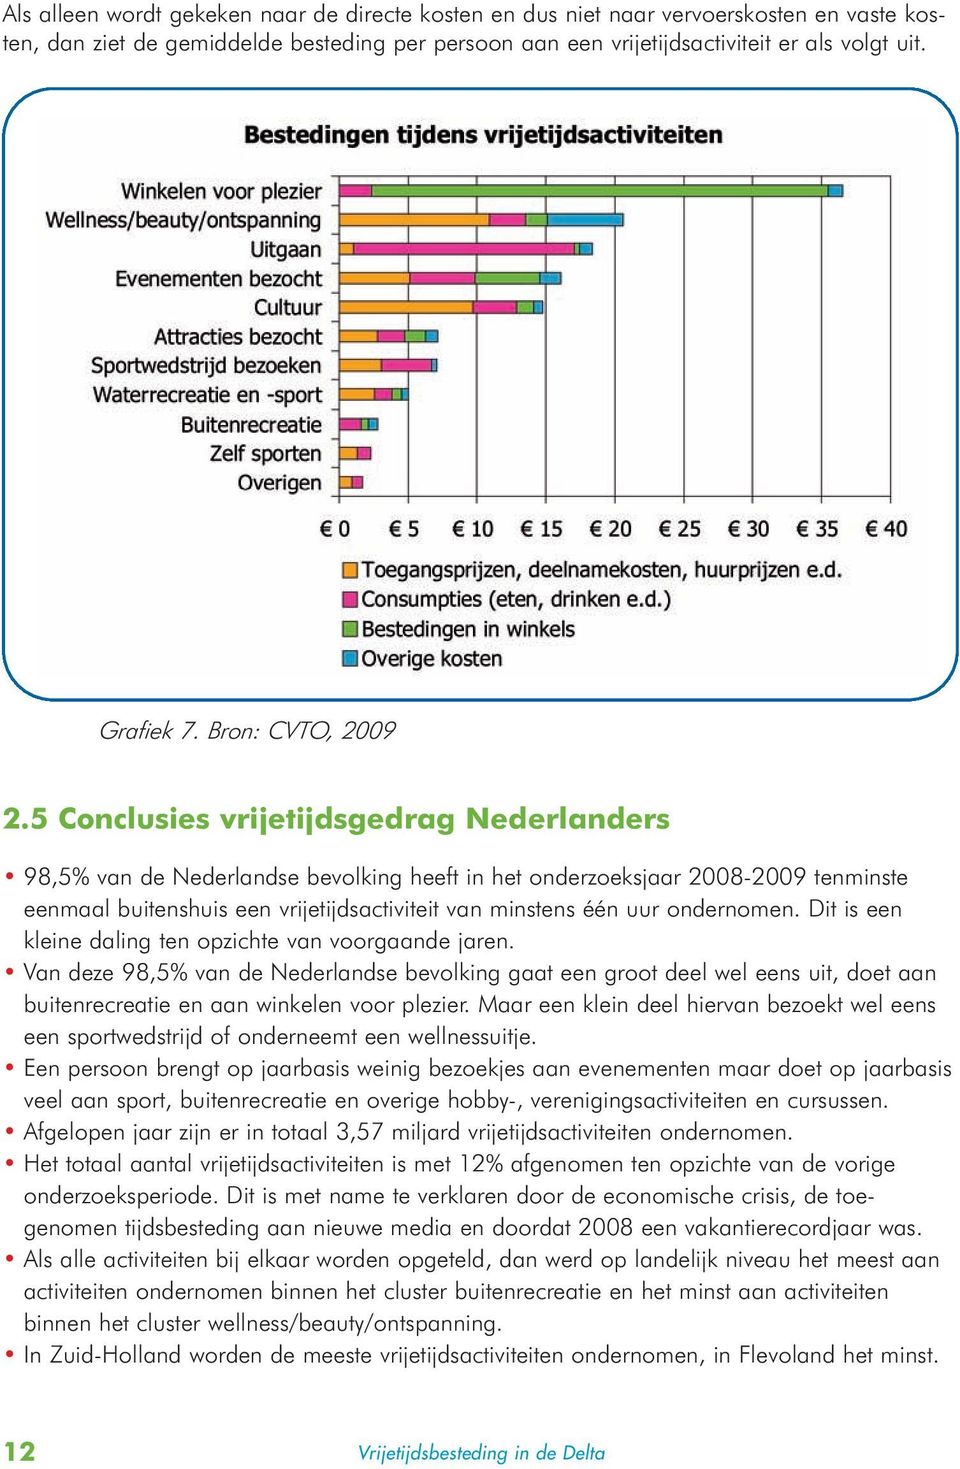 5 Conclusies vrijetijdsgedrag Nederlanders 98,5% van de Nederlandse bevolking heeft in het onderzoeksjaar 2008-2009 tenminste eenmaal buitenshuis een vrijetijdsactiviteit van minstens één uur